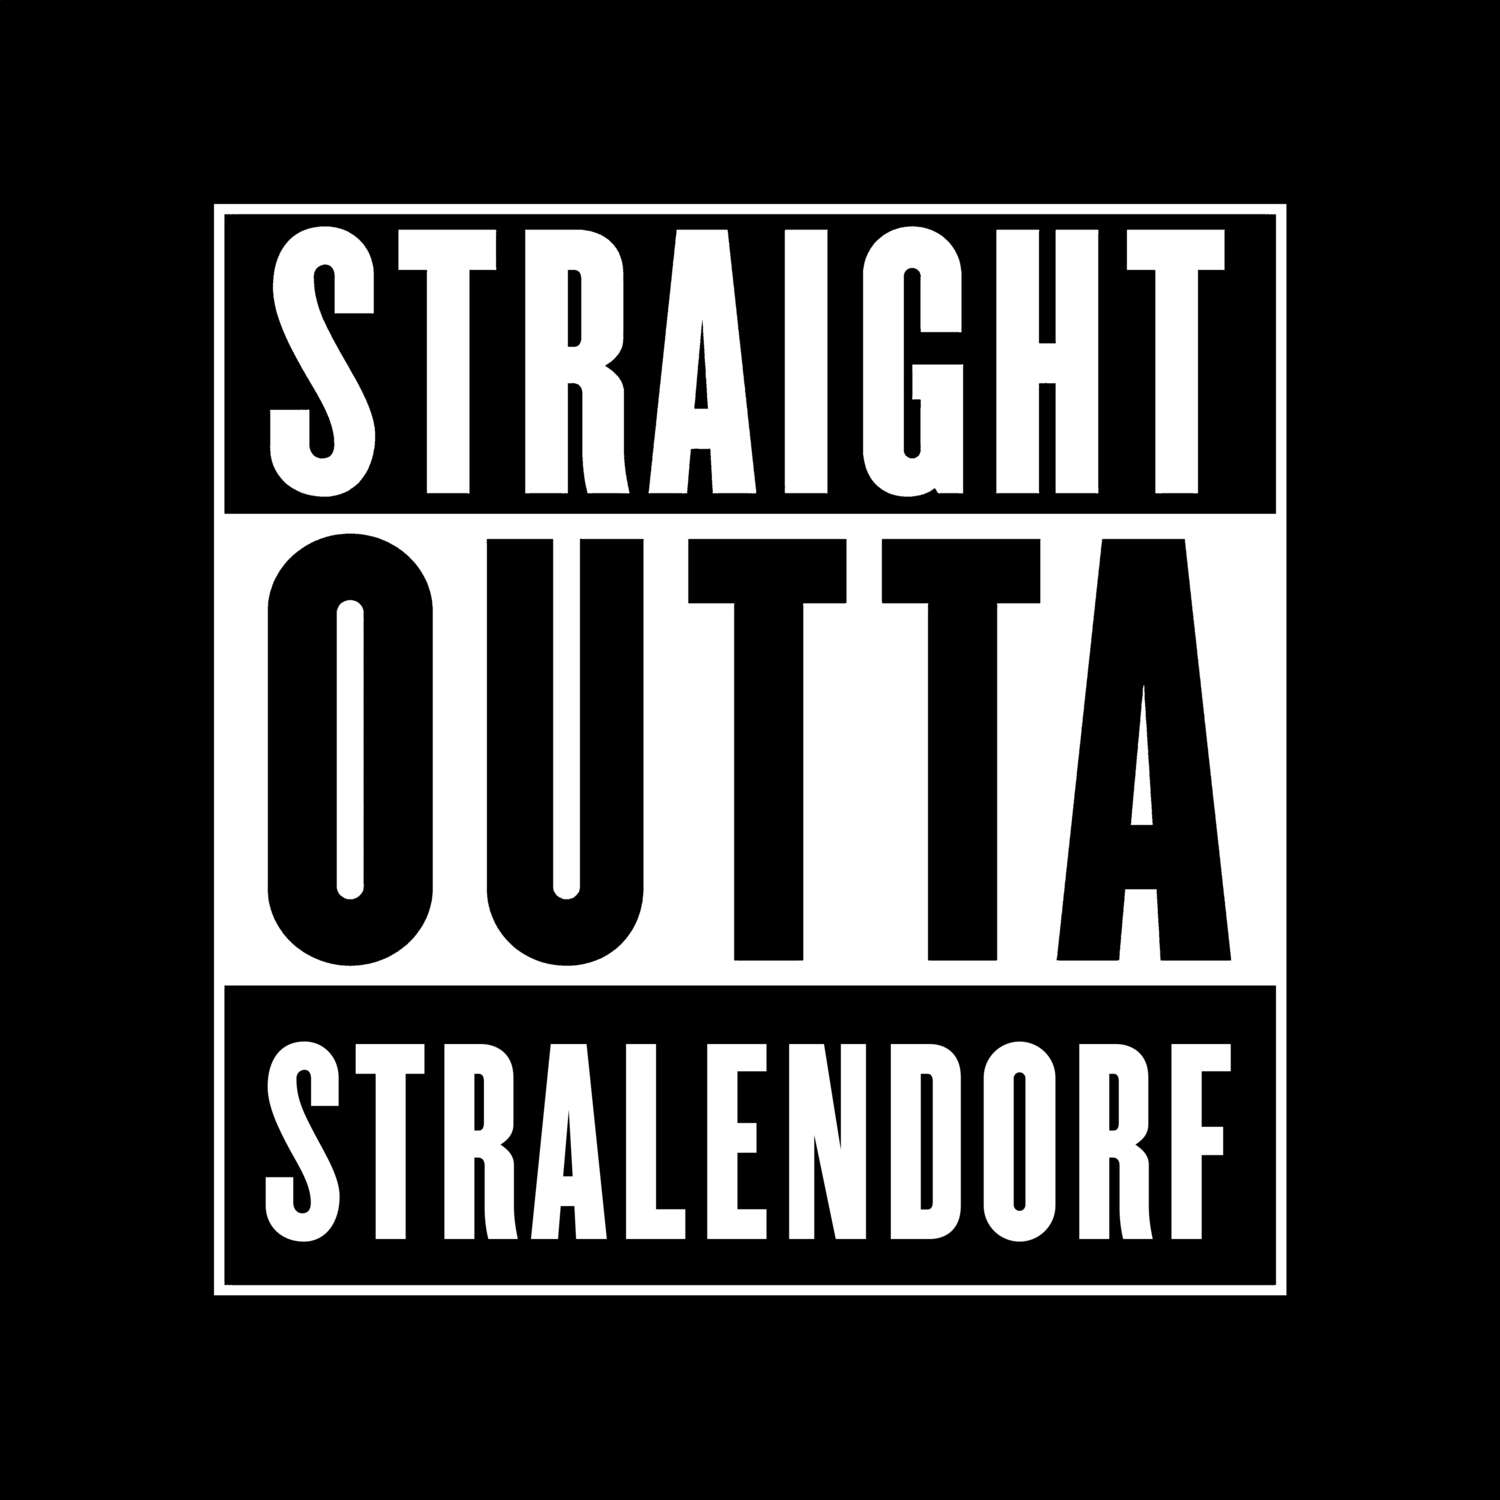 Stralendorf T-Shirt »Straight Outta«